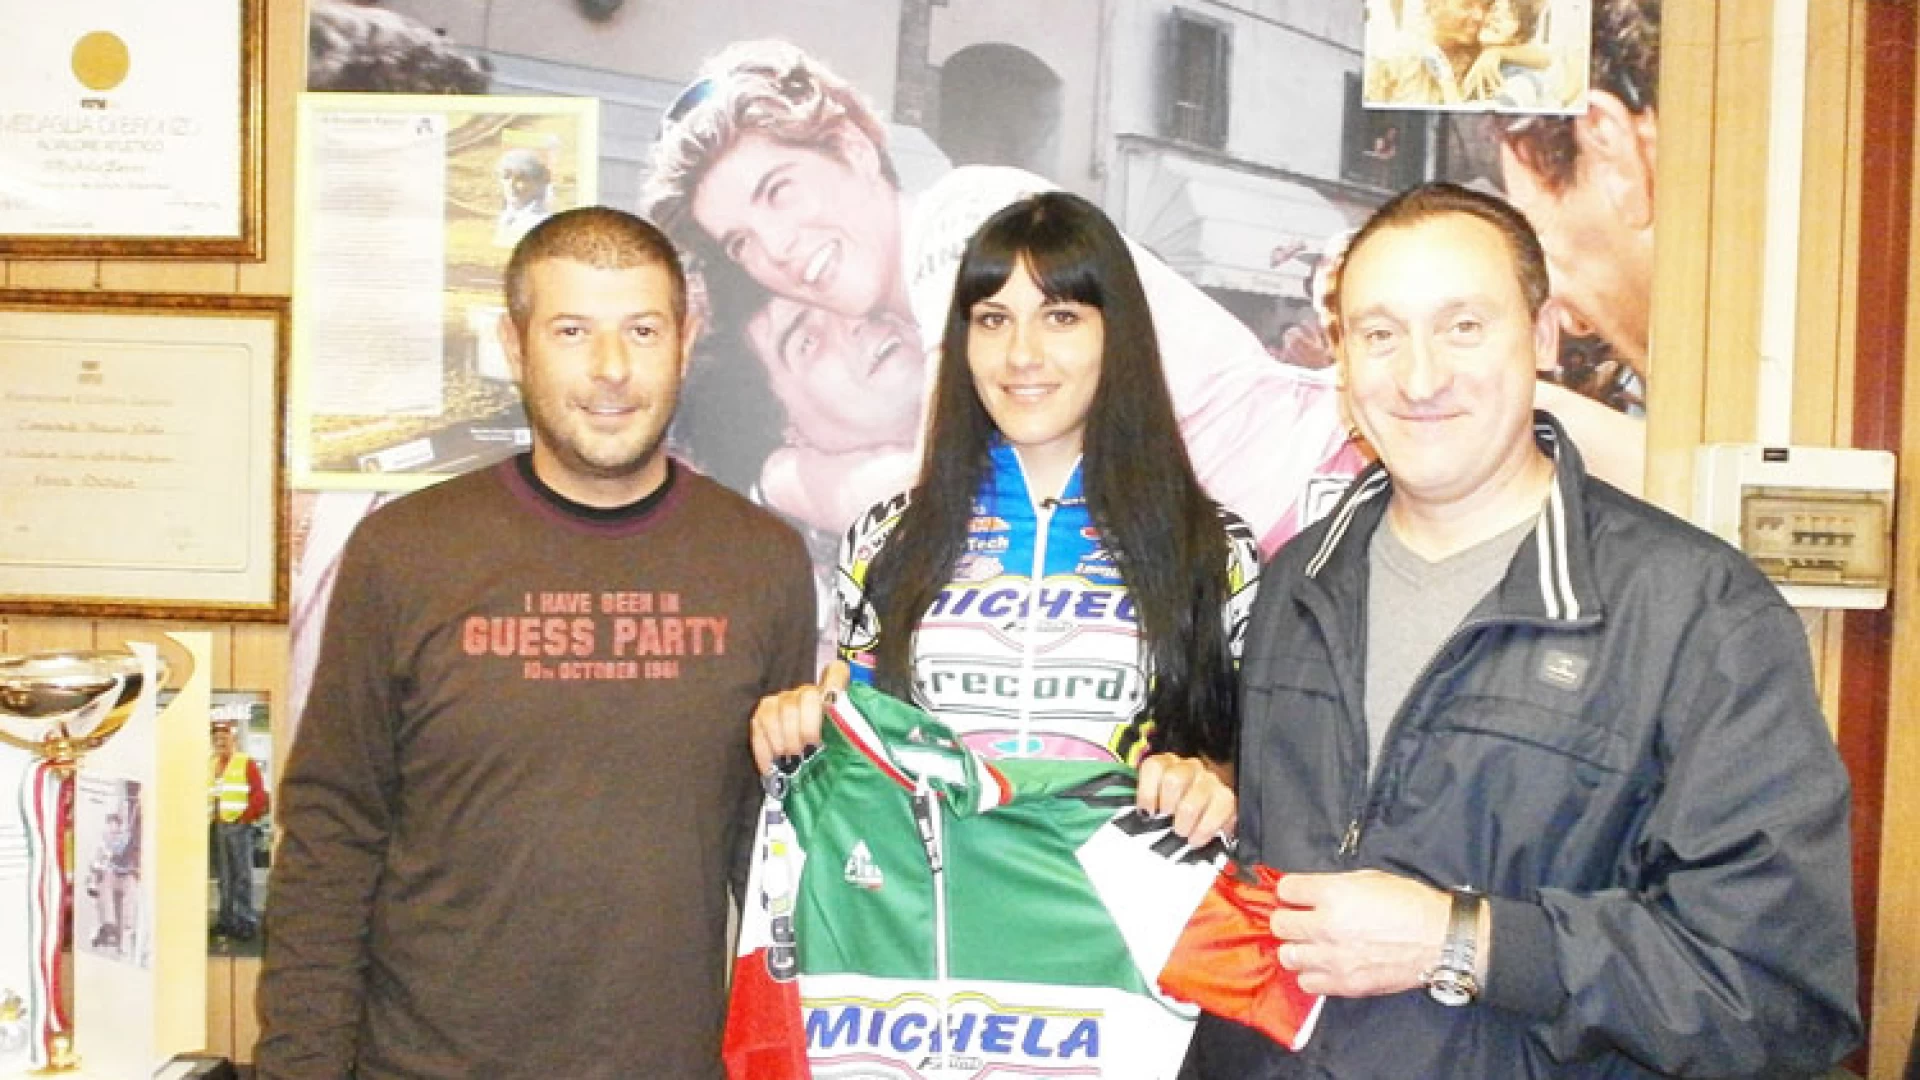 Manuela De Iuliis la campionessa della “Valle del Volturno”. “Il sogno 2016 è il Giro d’Italia”. La giovane di Rocchetta diventata da poco professionista.